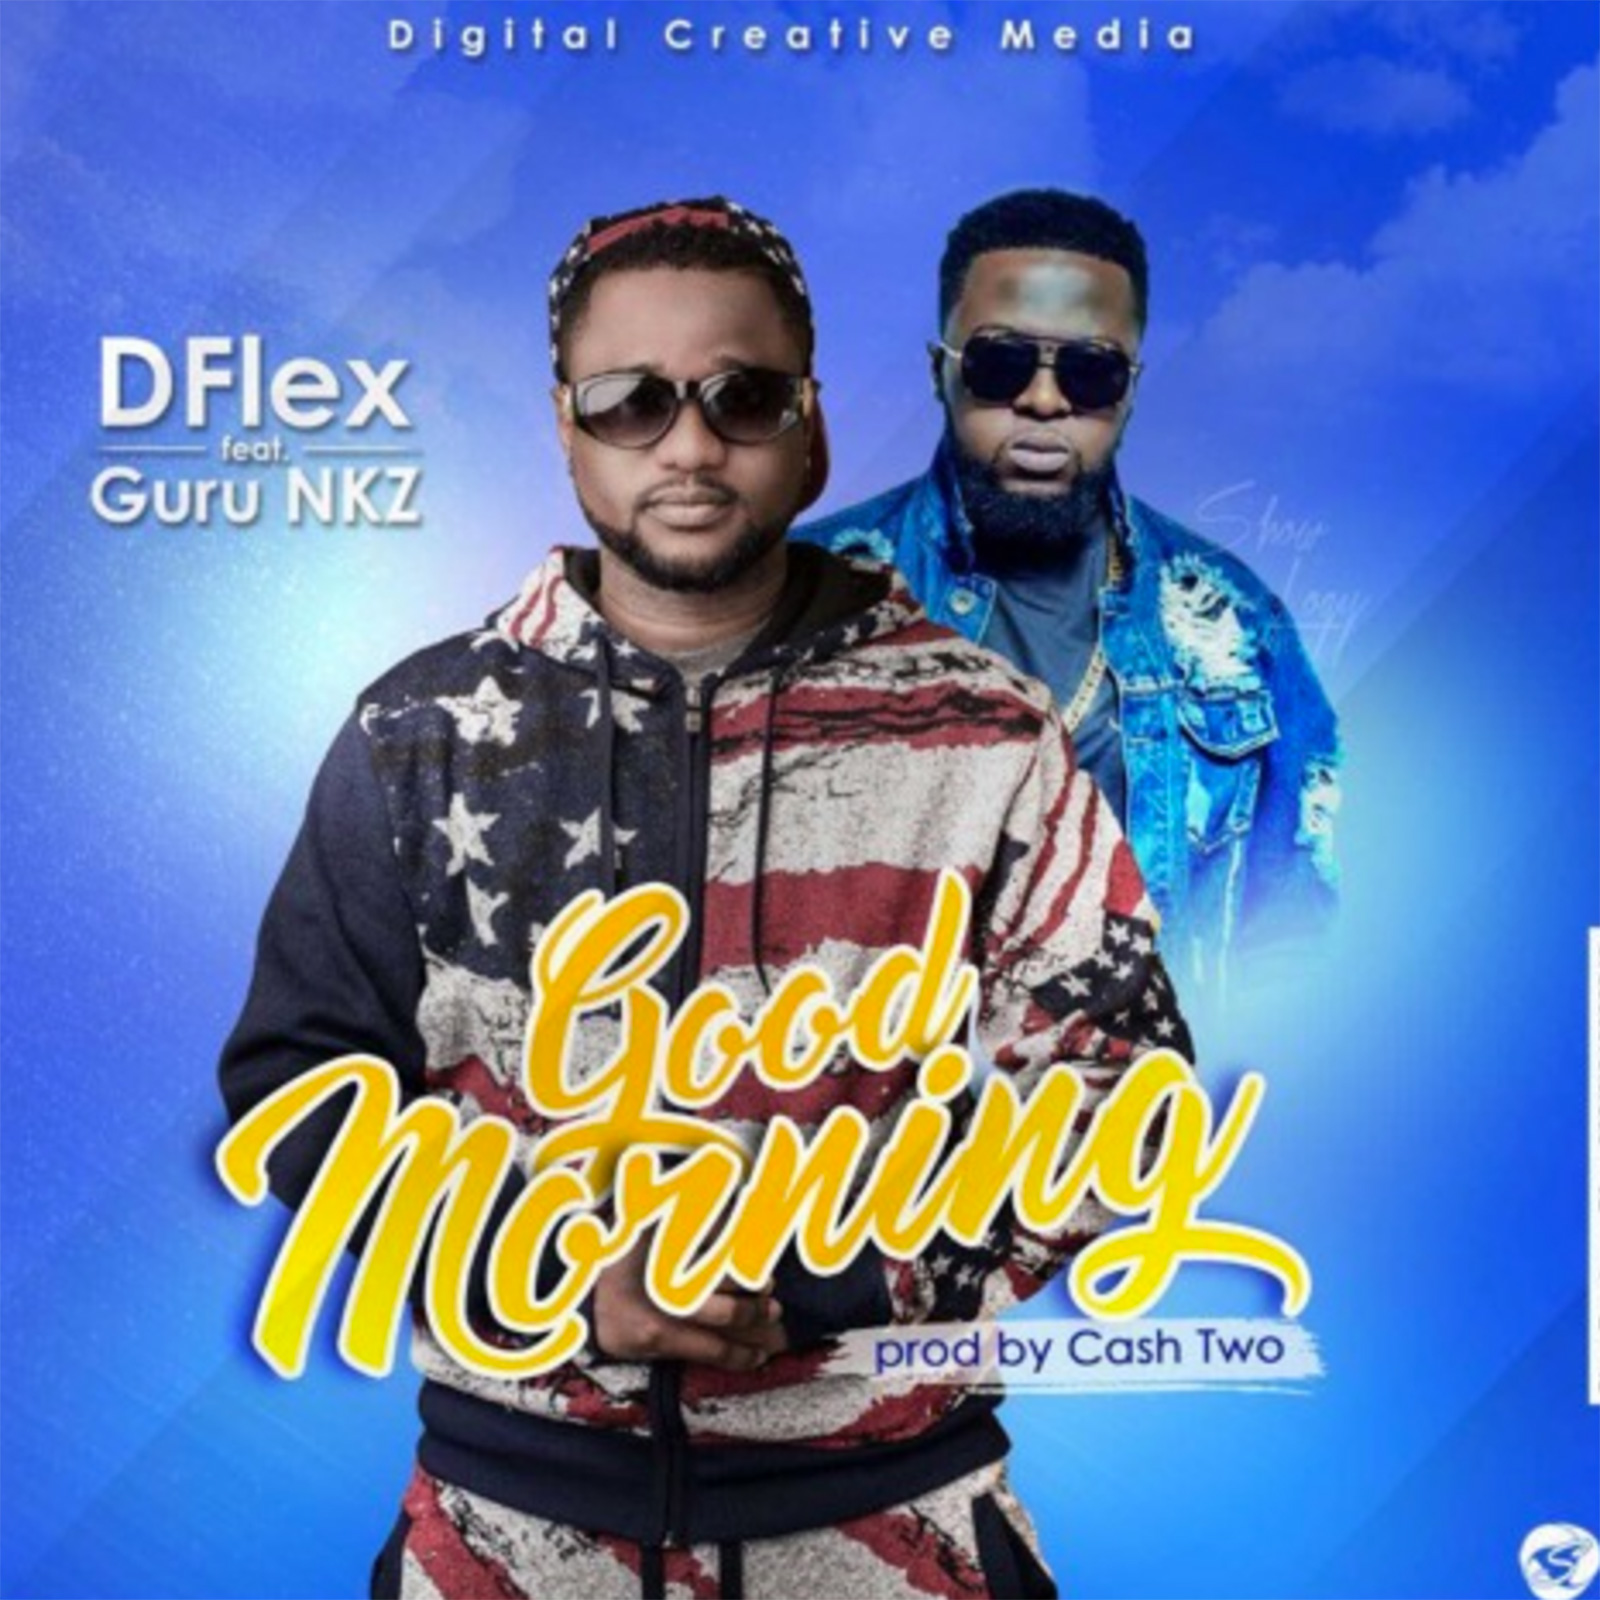 Good Morning by DFlex feat. Guru